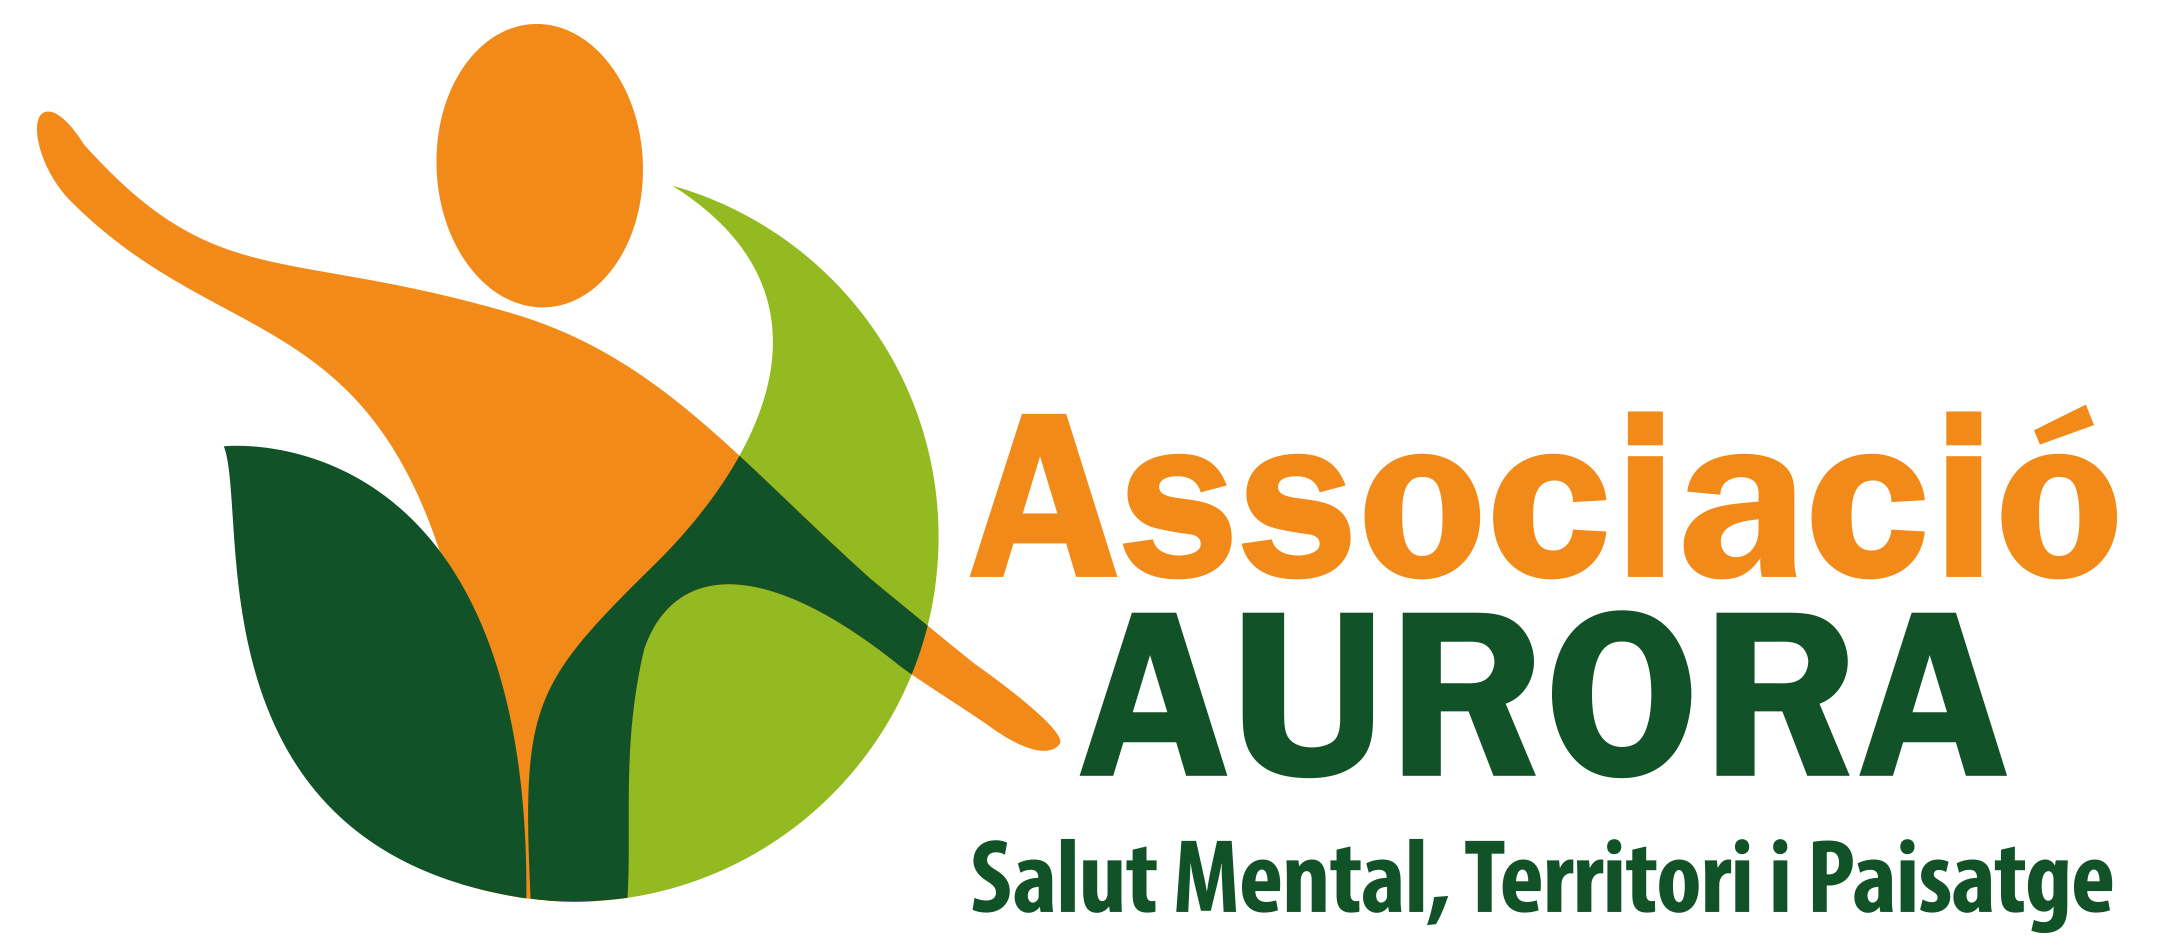 Associació Aurora